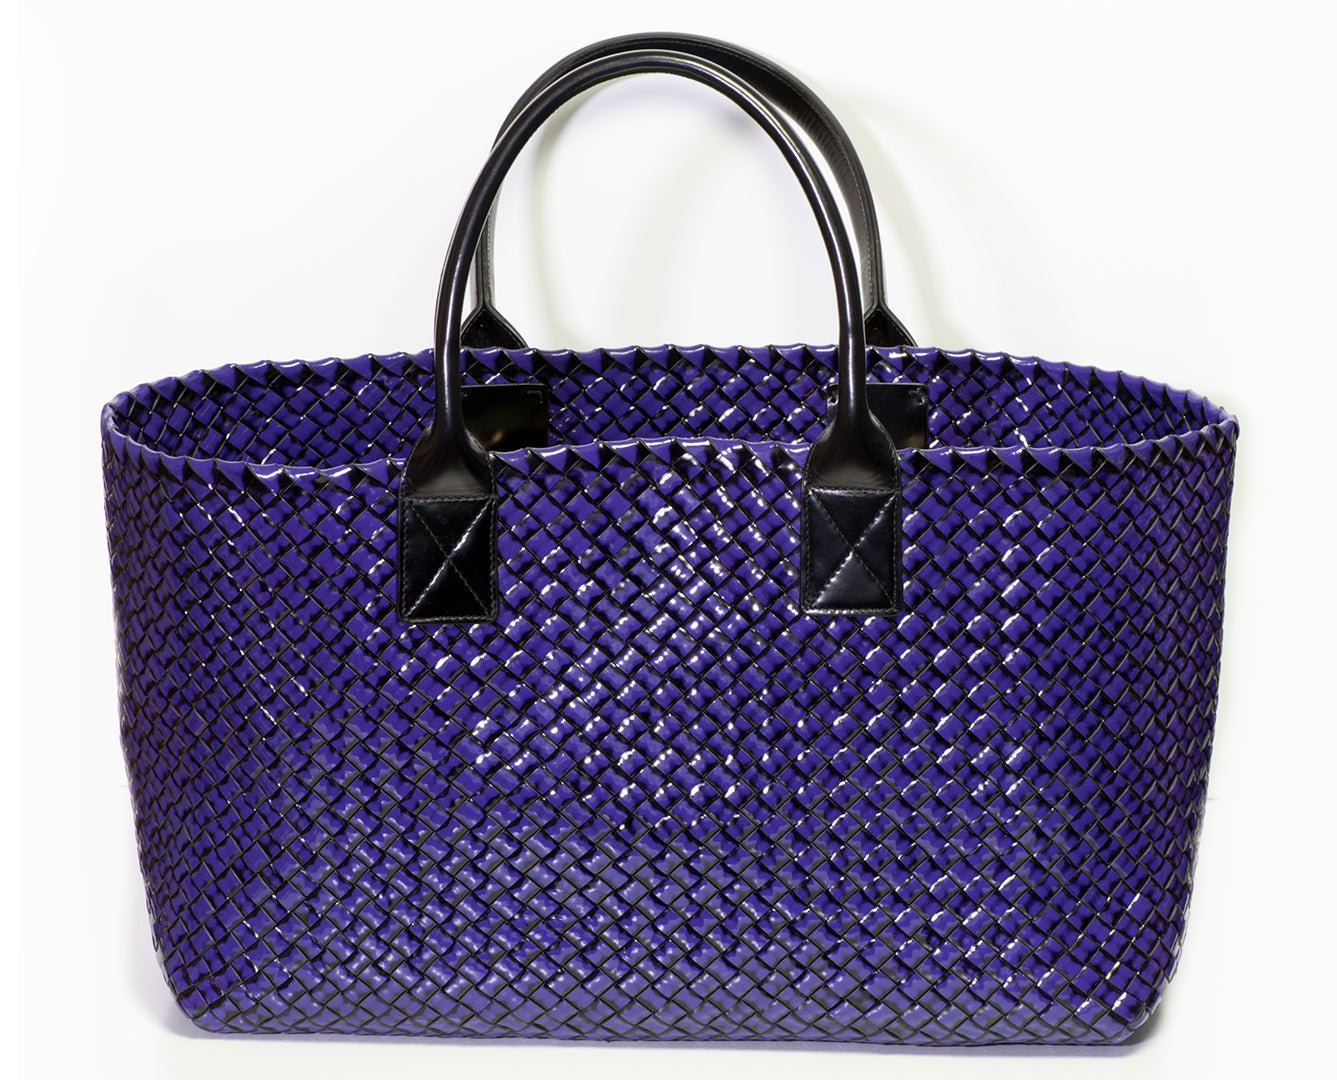 BOTTEGA VENETA CABAT 259/500 Large Purple Intrecciato Patent Leather Tote Bag - DSF Antique Jewelry